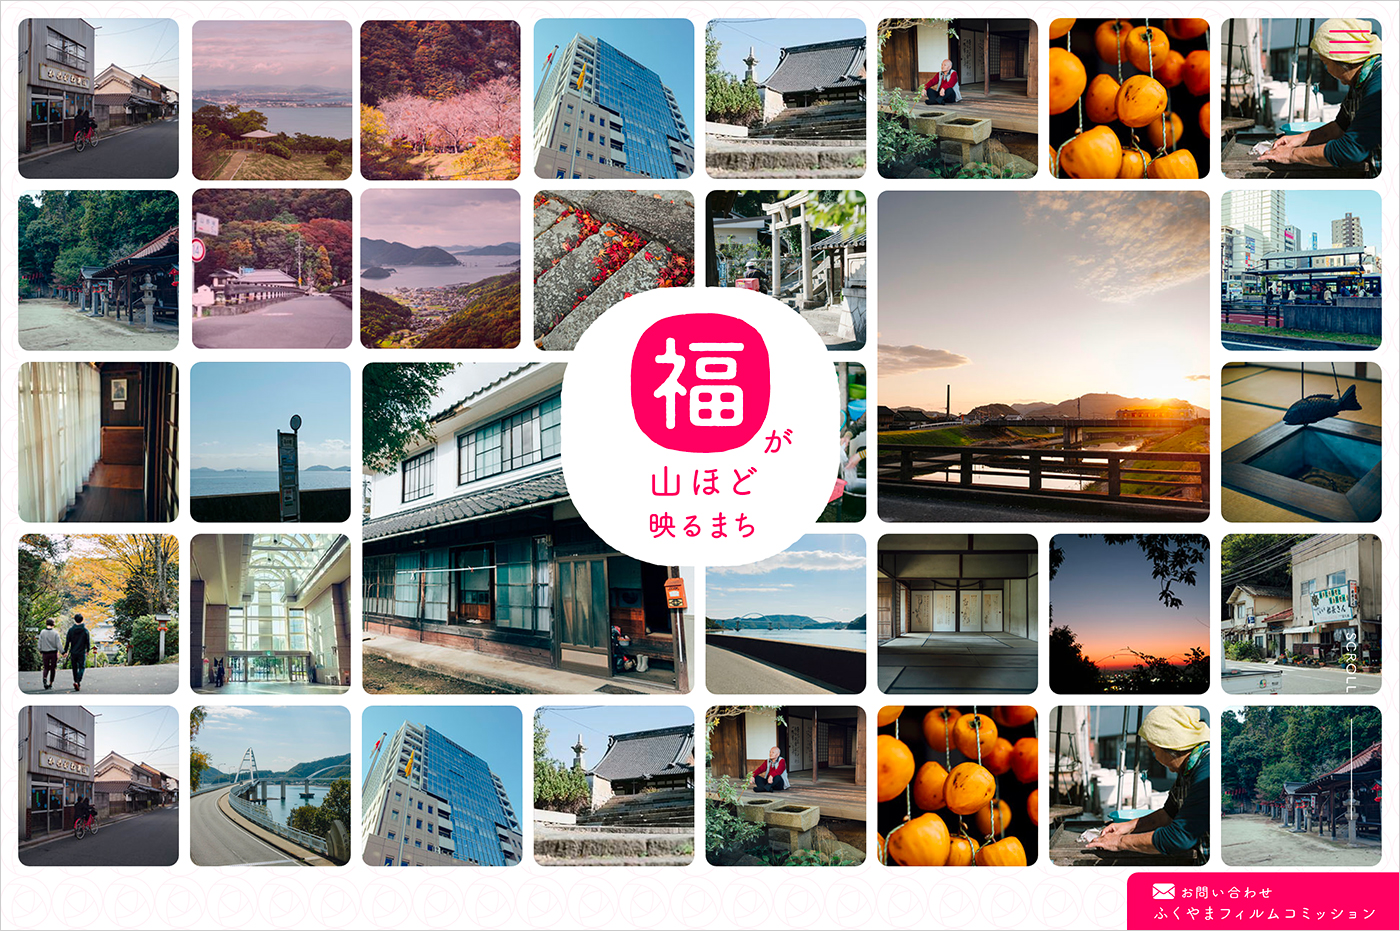 ふくやまフィルムコミッション | 福山観光コンベンション協会ウェブサイトの画面キャプチャ画像